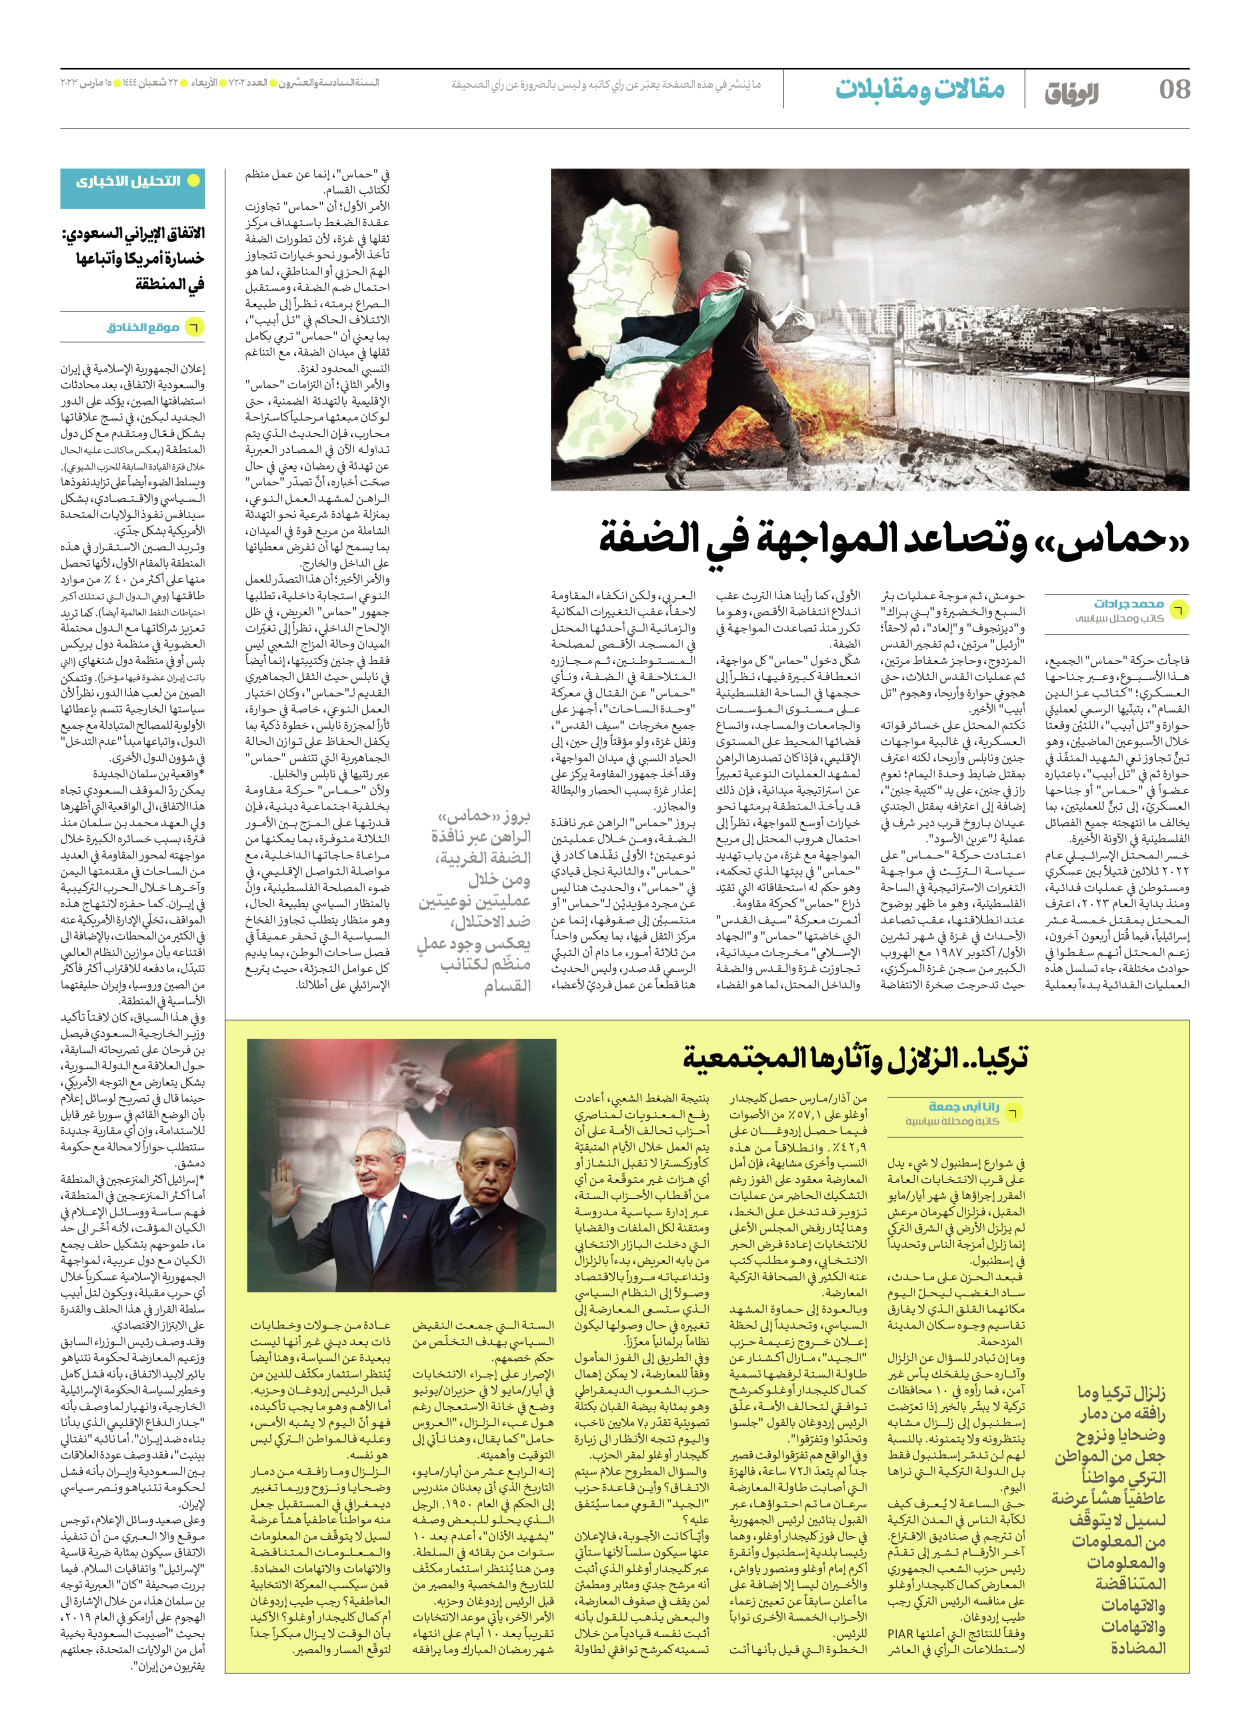 صحیفة ایران الدولیة الوفاق - العدد سبعة آلاف ومائتان واثنان - ١٥ مارس ٢٠٢٣ - الصفحة ۸